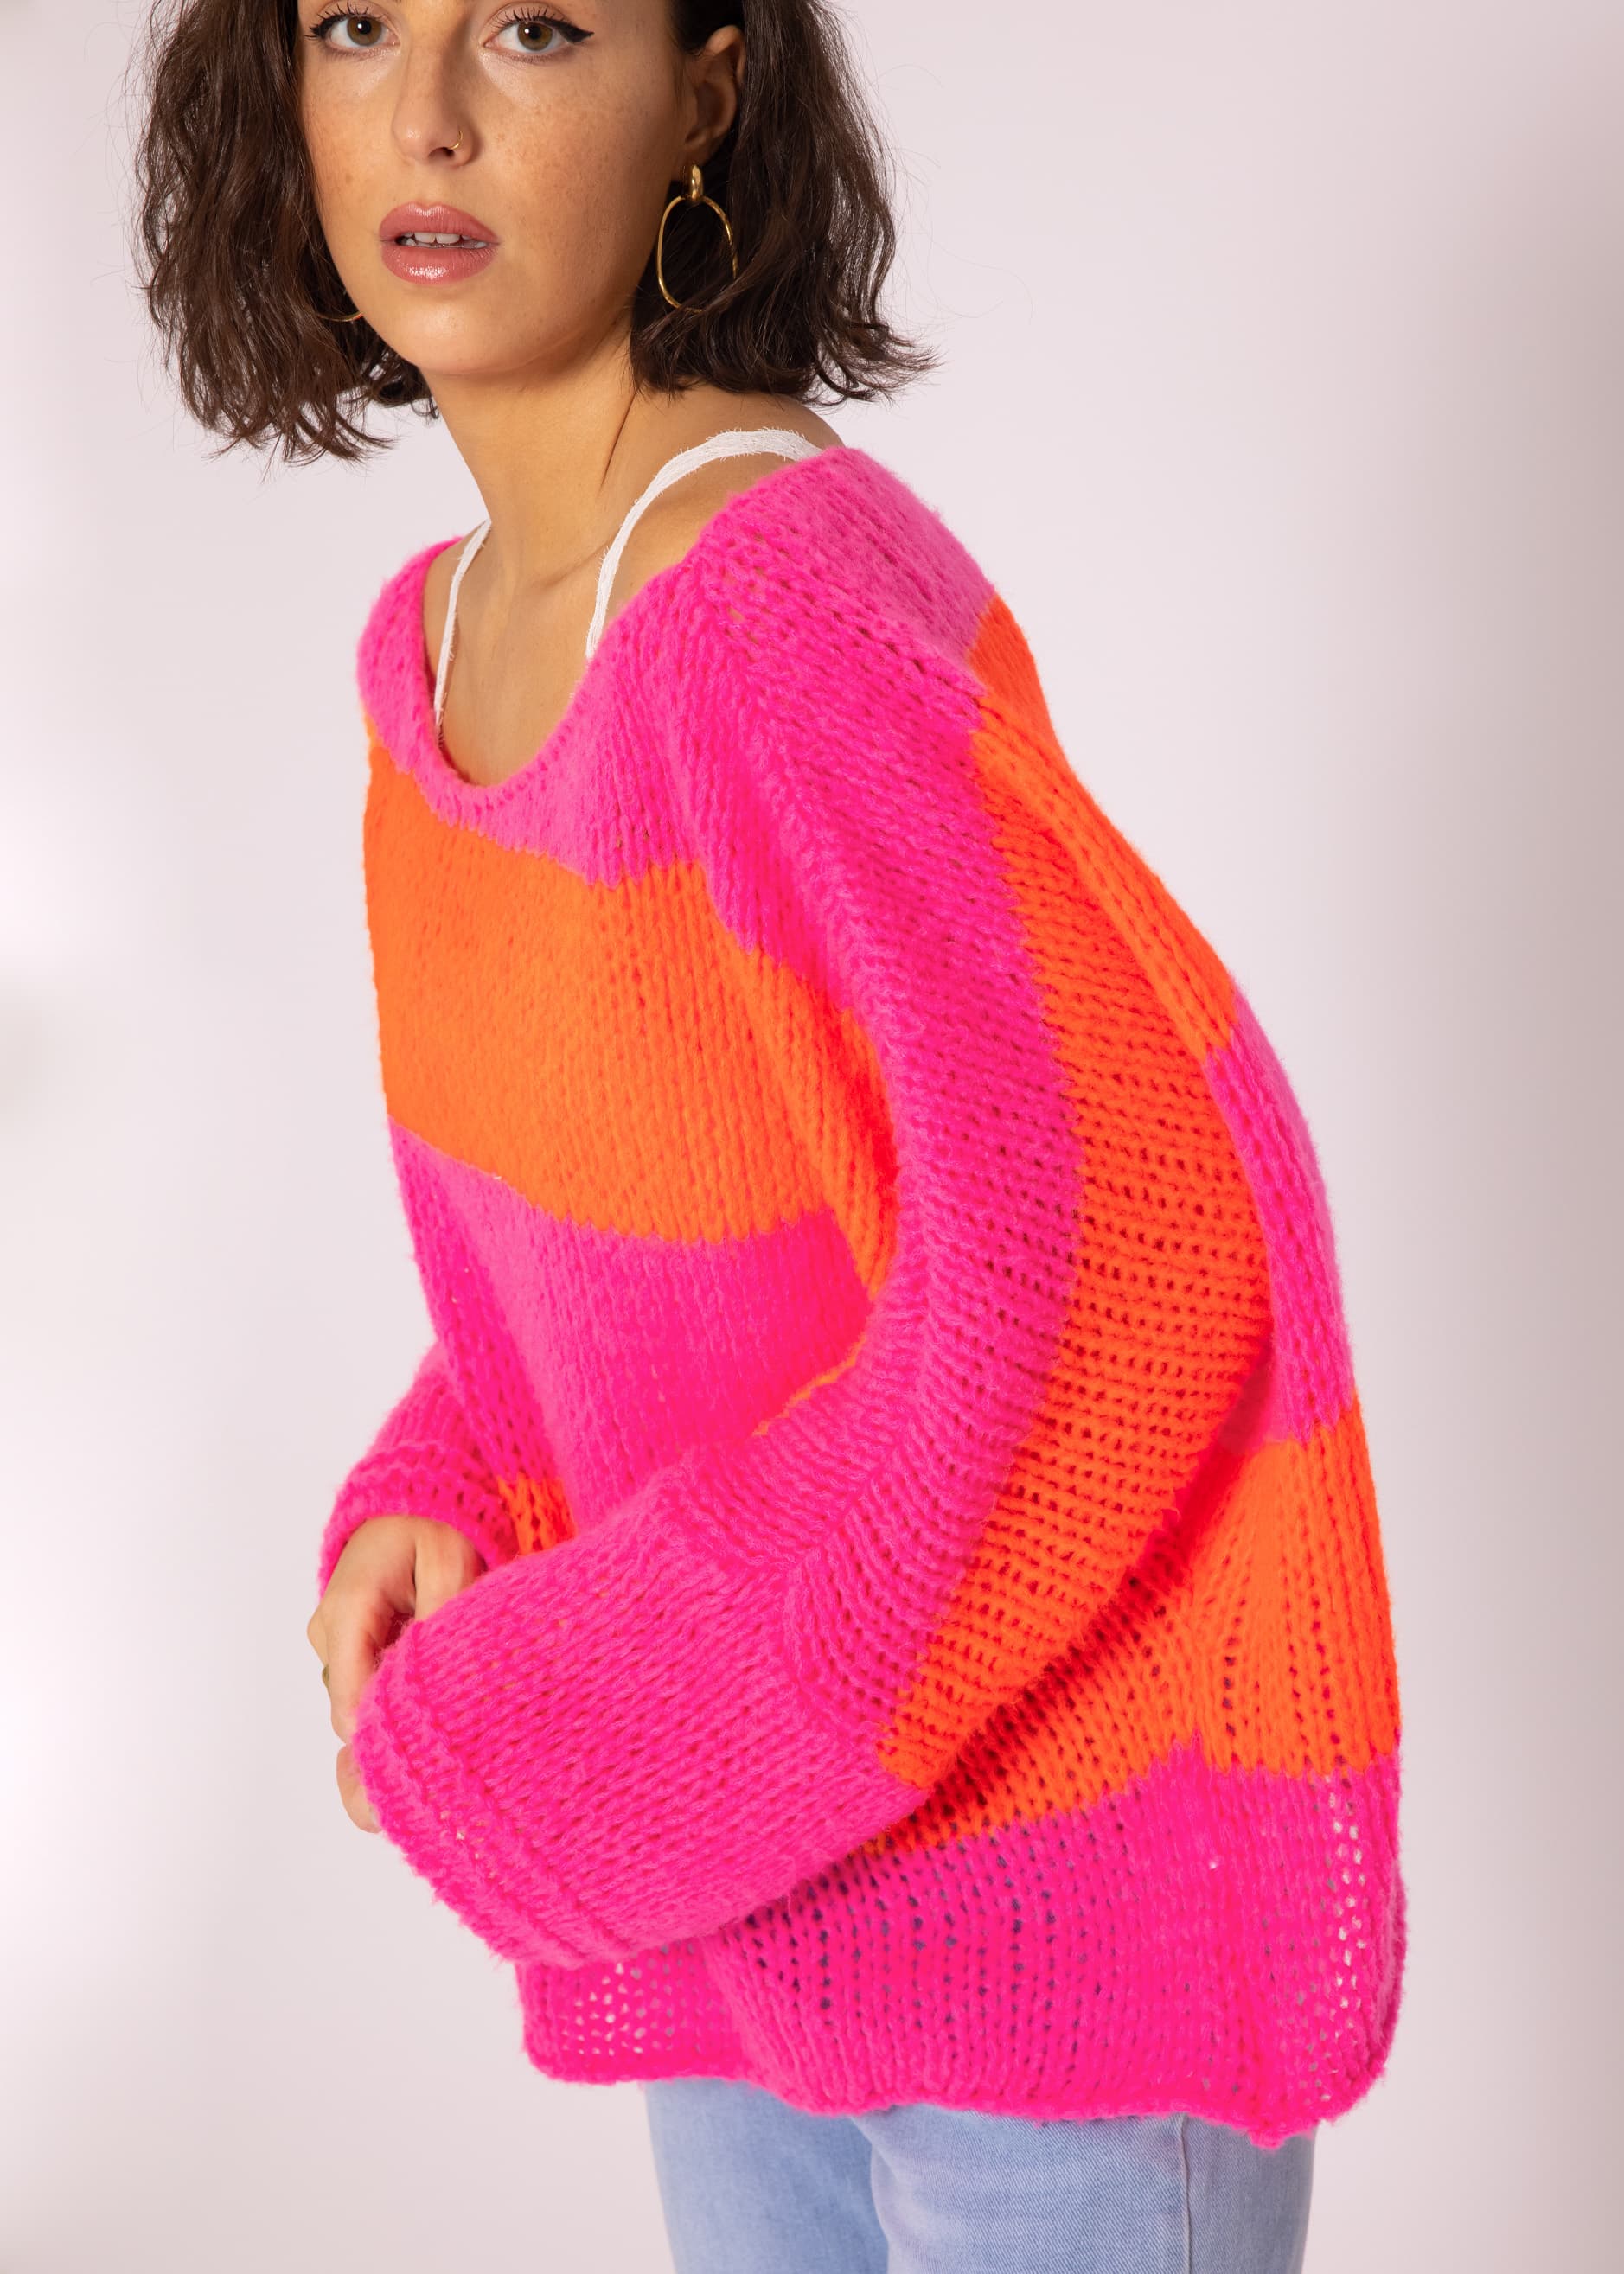 oversize Loose pink-orange knit jumper, | Pullover | Clothing